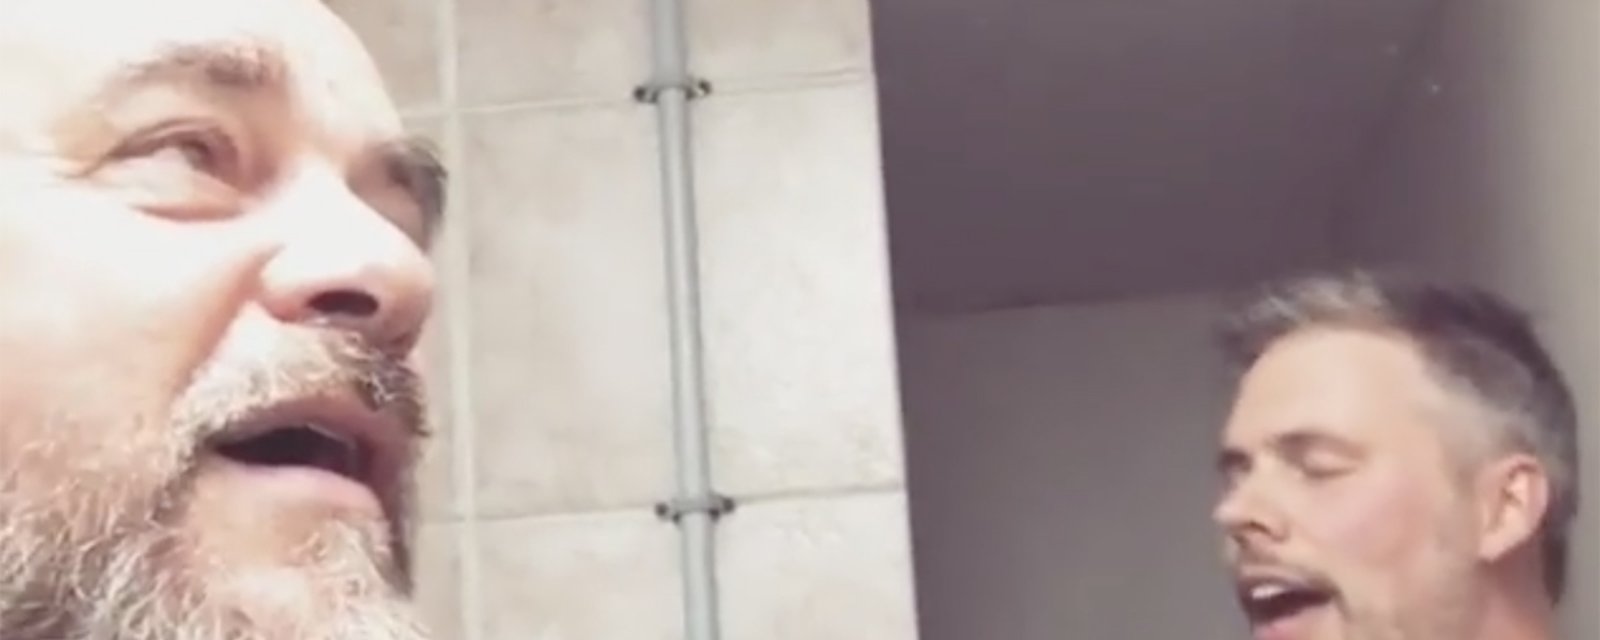 Une vidéo de JF Breau et Sylvain Cossette dans la douche fait réagir sur les réseaux sociaux!